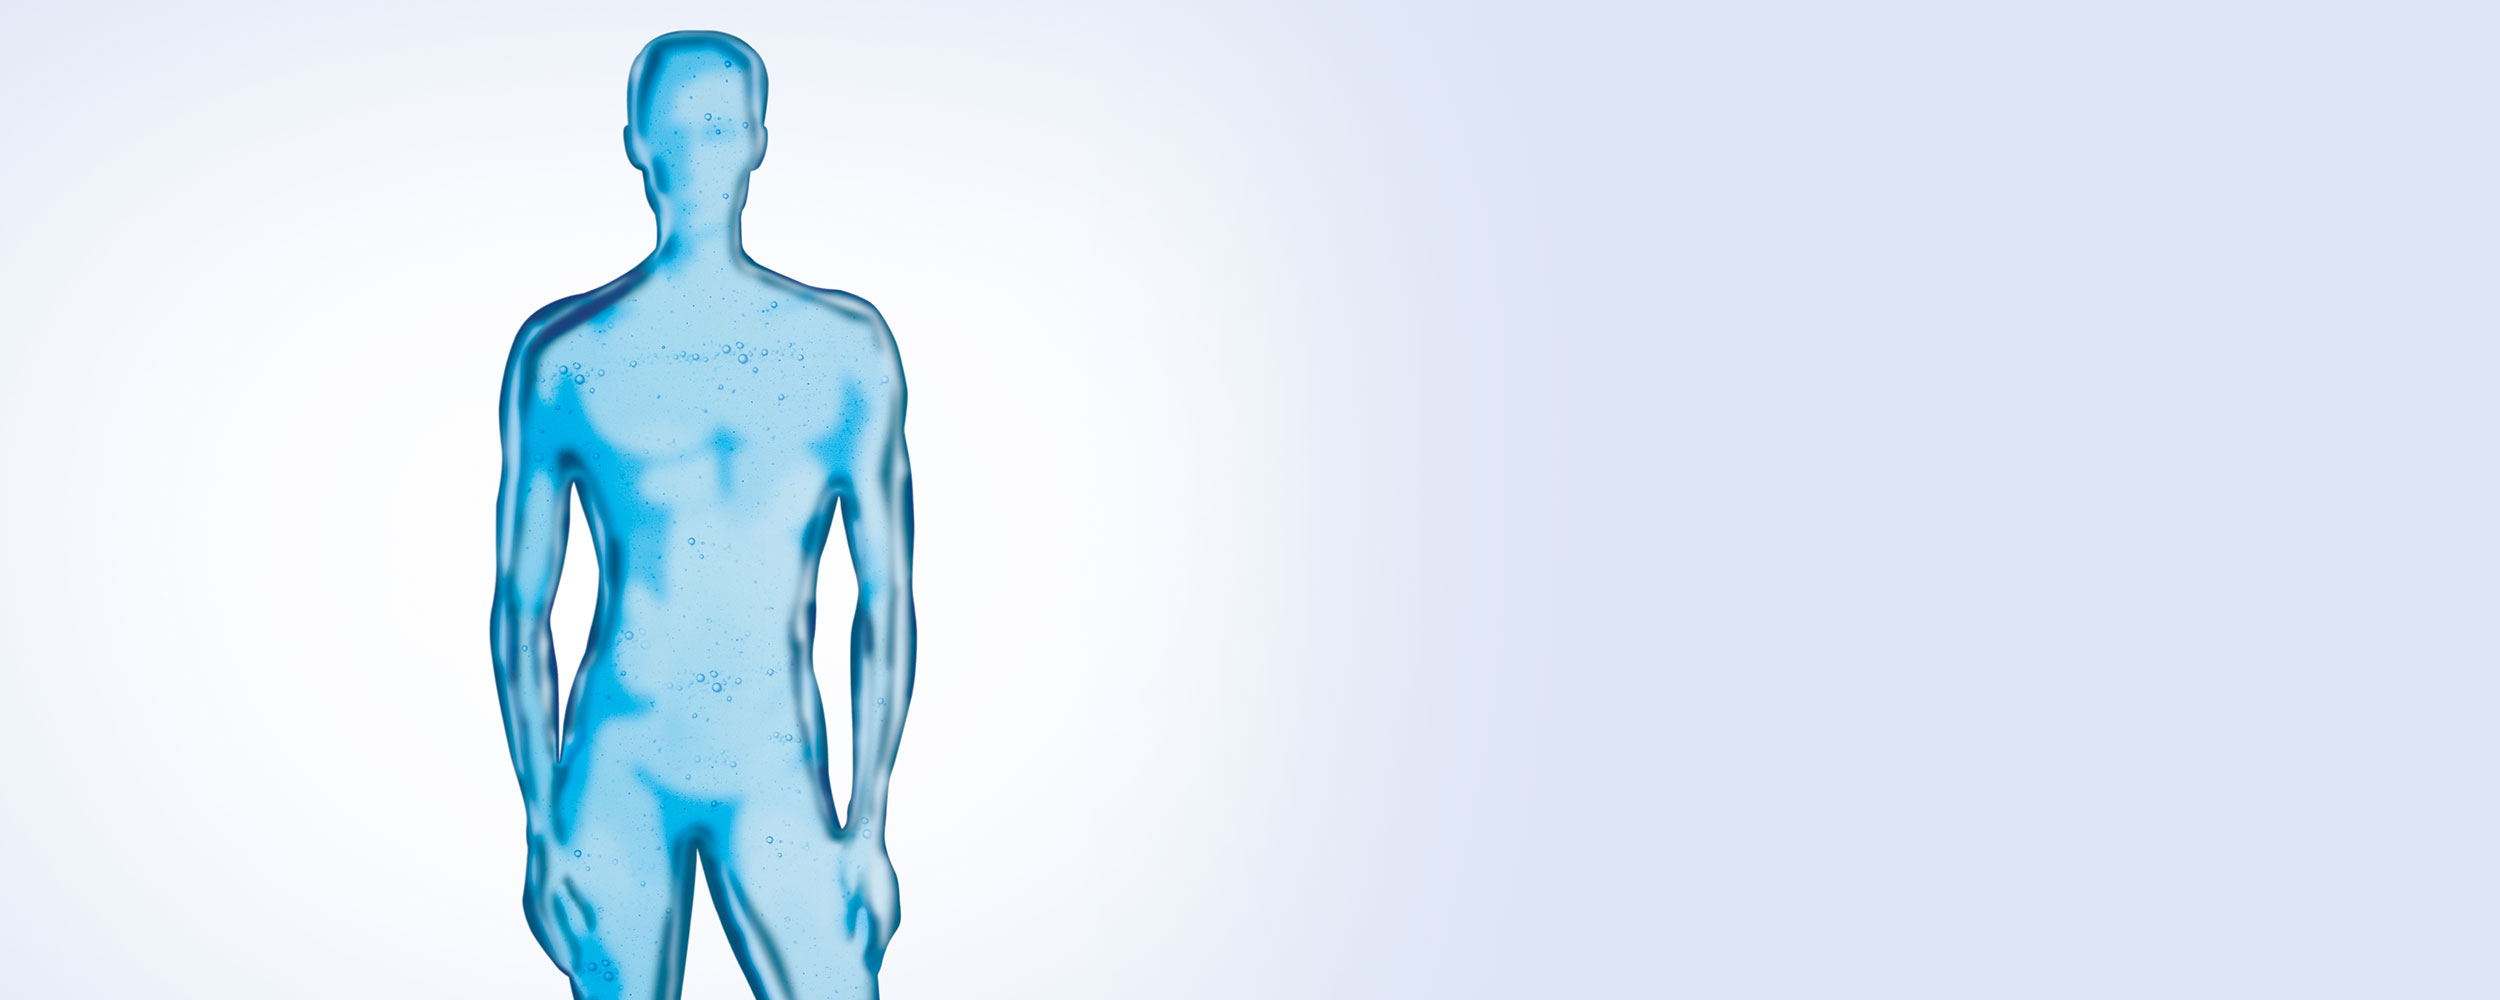 Silhouette eines Mannes (blau, transparent)